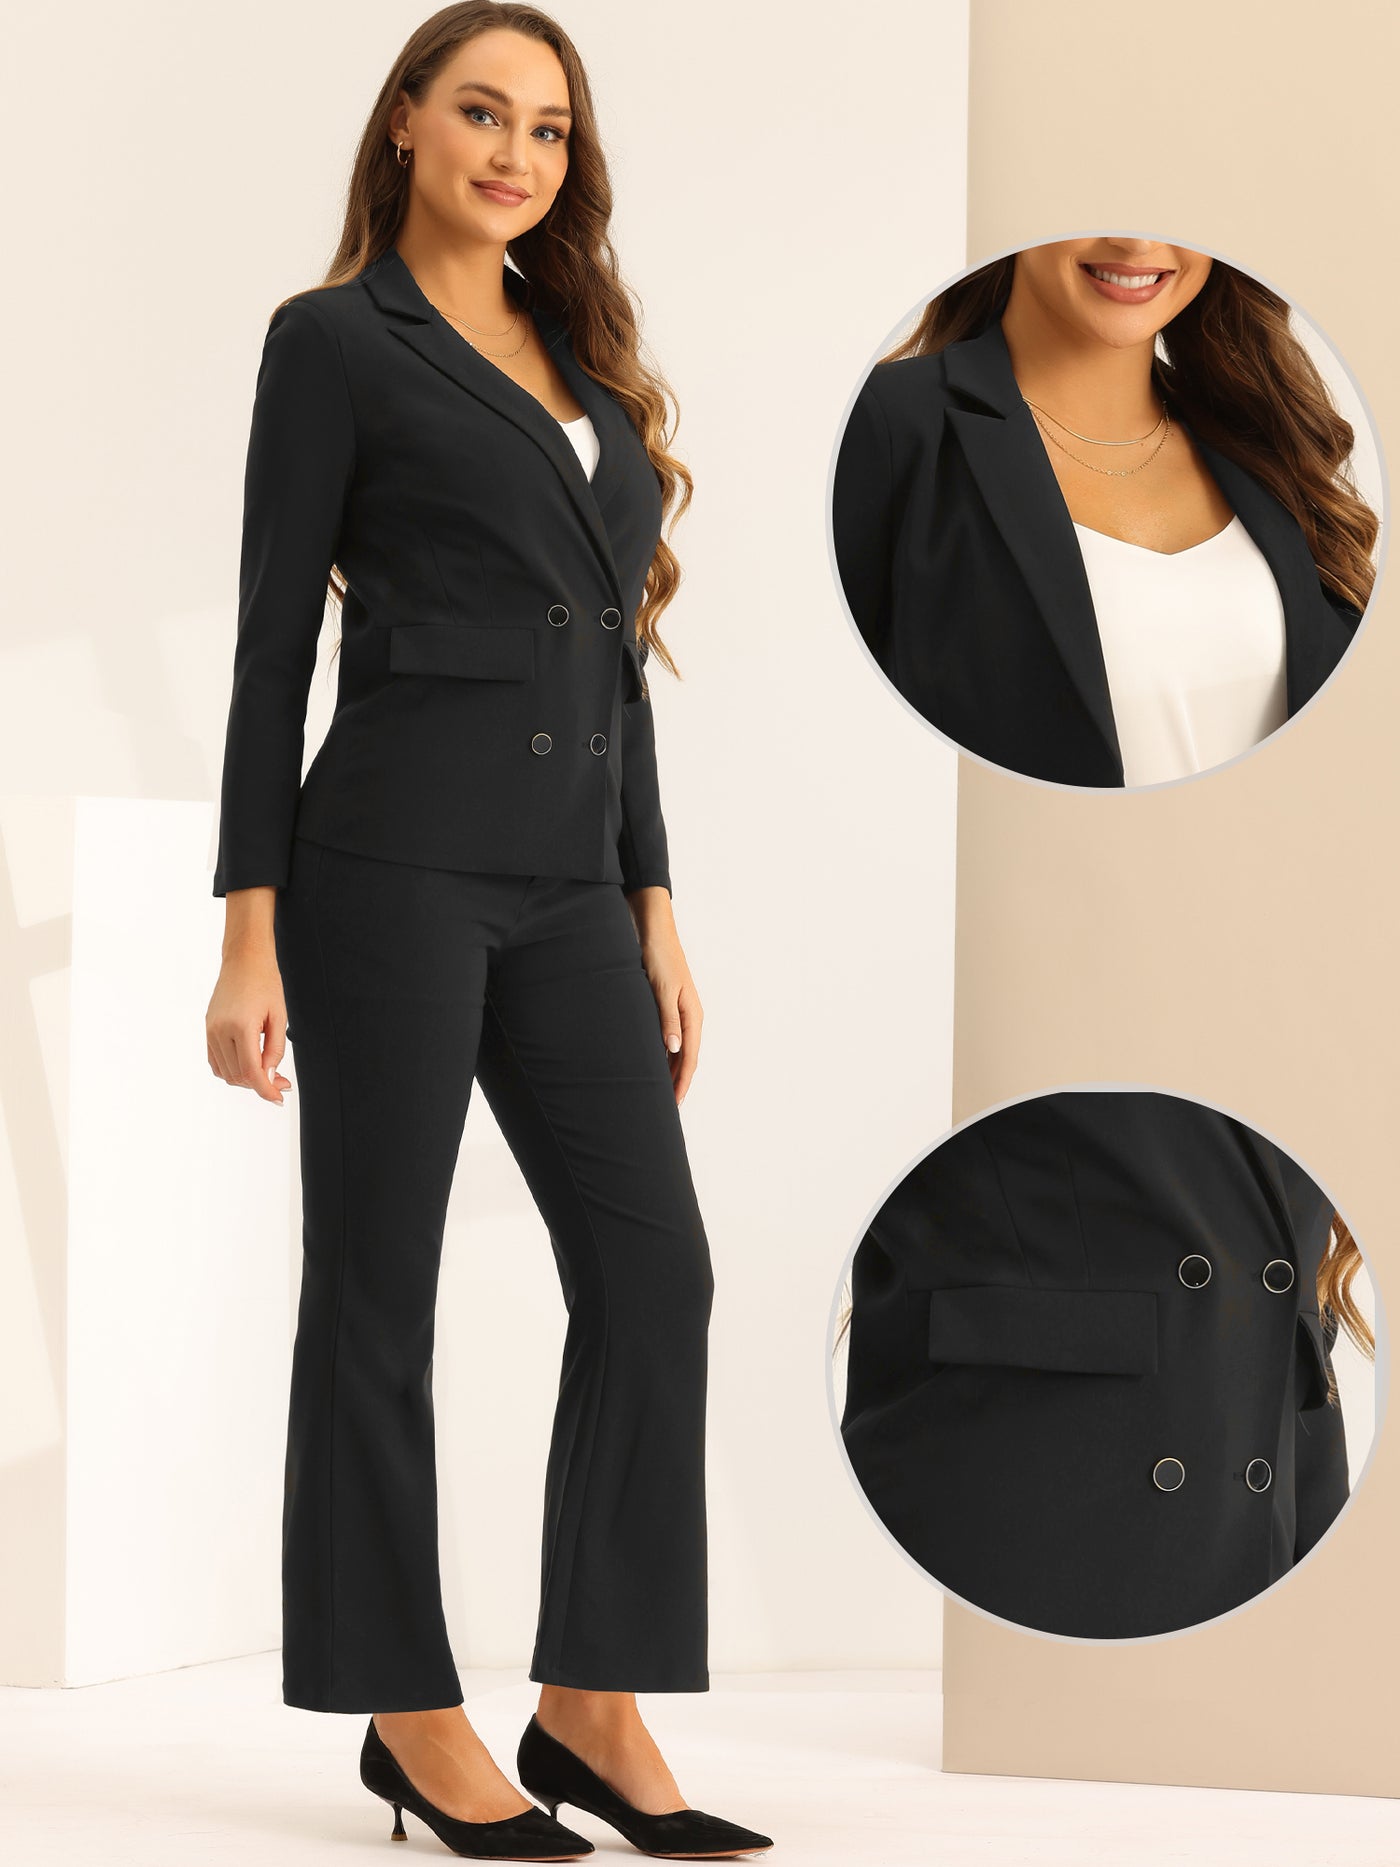 Allegra K 2 Pieces Notched Lapel Blazer and Long Pants Business Work Suit Set